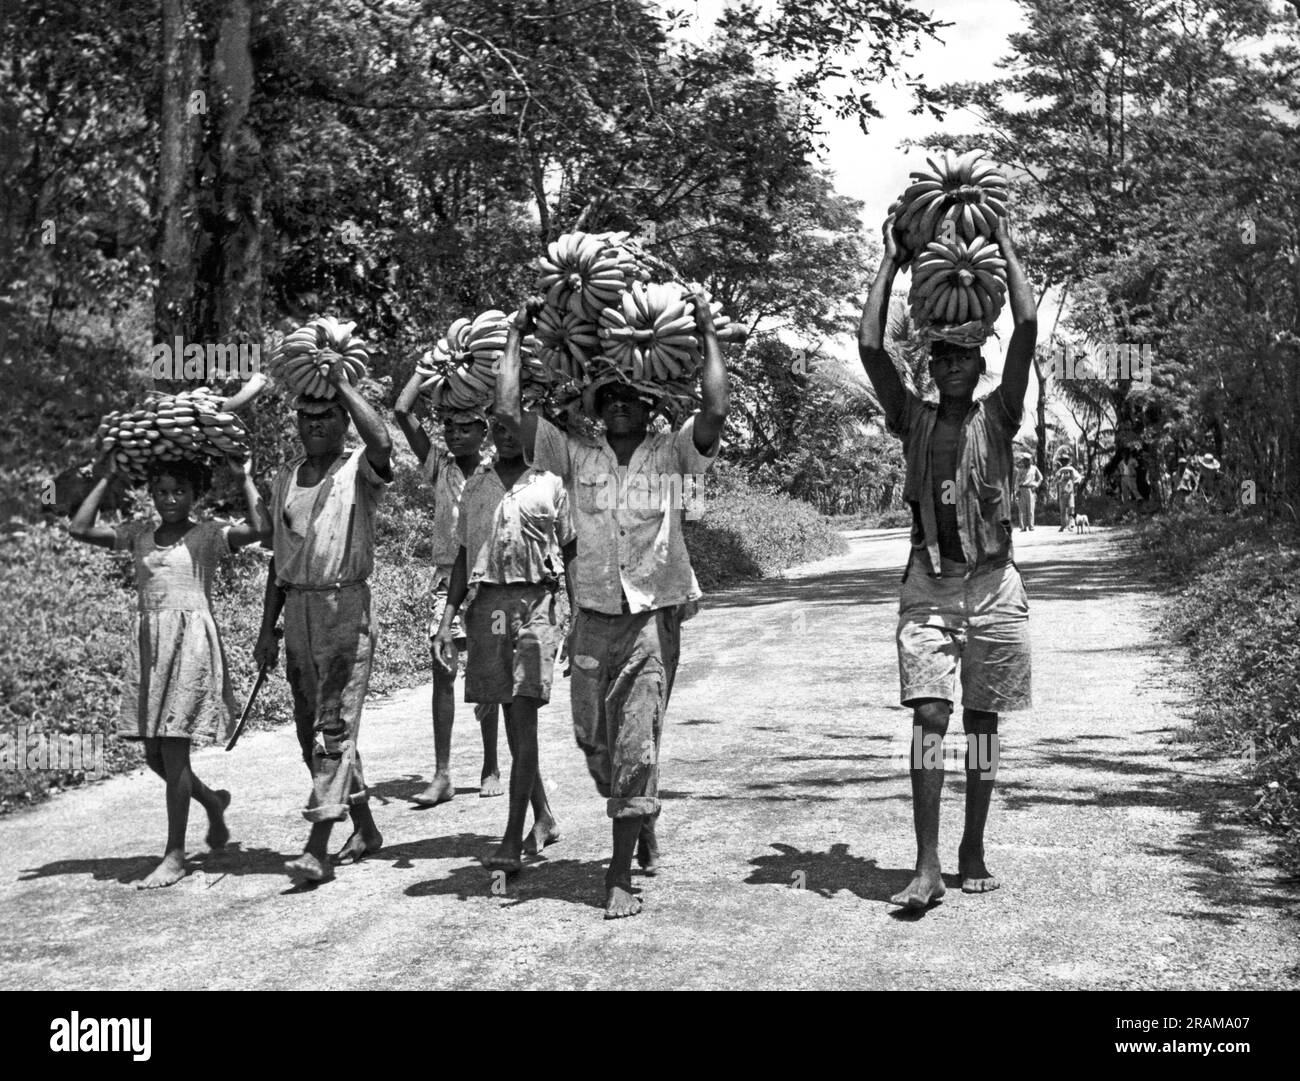 Jamaika, Britische Westindischen Inseln: August 1956. Eine Gruppe Einheimischer, die eine Bananenernte entlang einer unbefestigten Straße tragen. Stockfoto